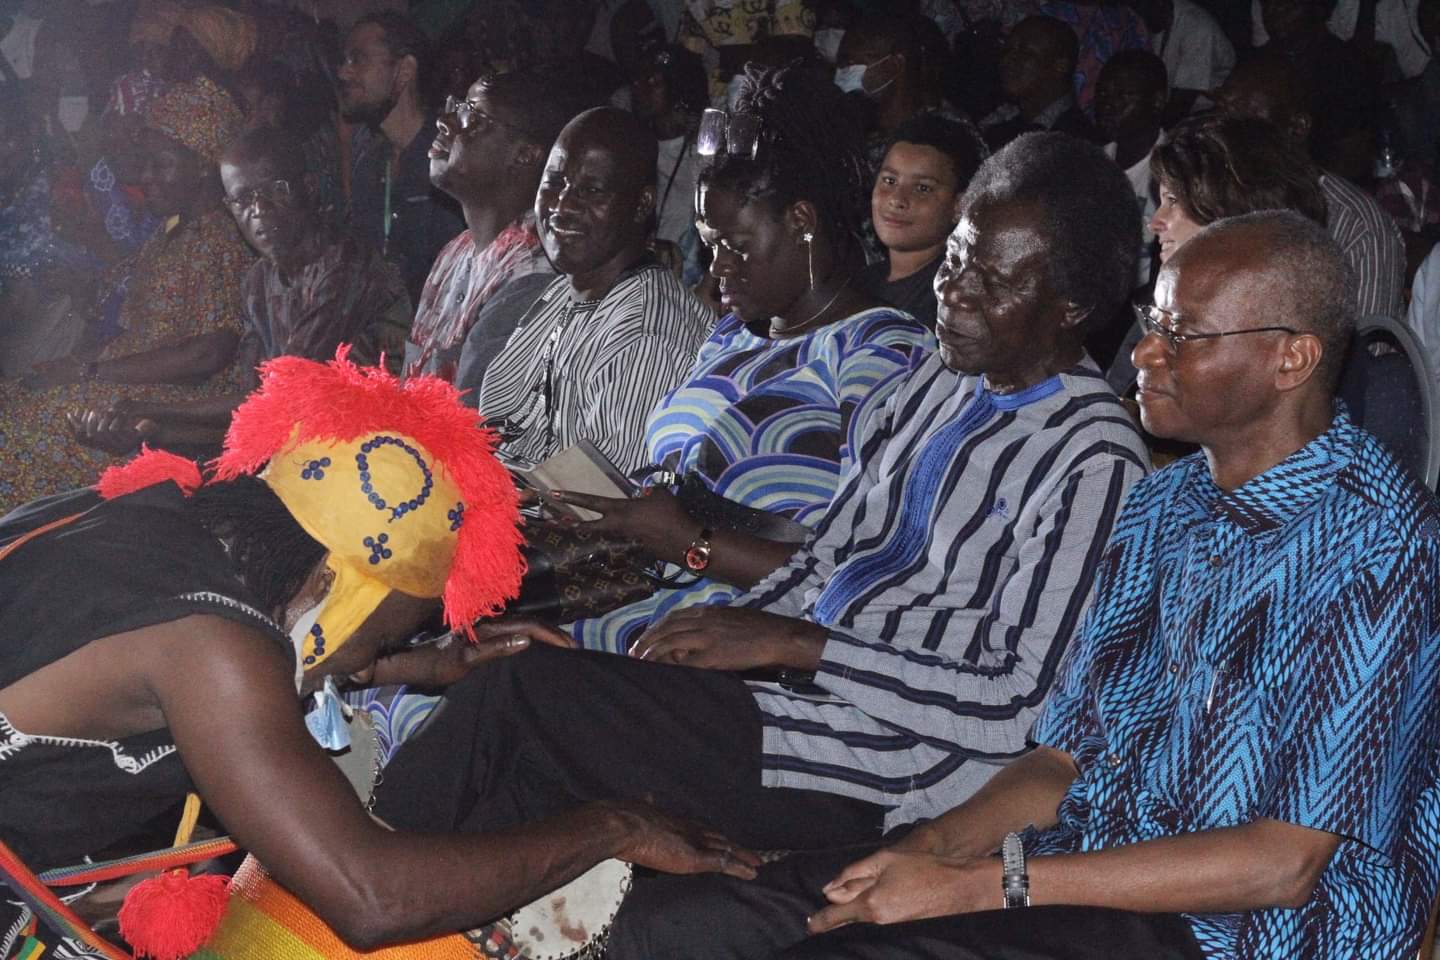  Festival international de théâtre et de marionnettes de Ouagadougou: c’est parti pour la 18e édition